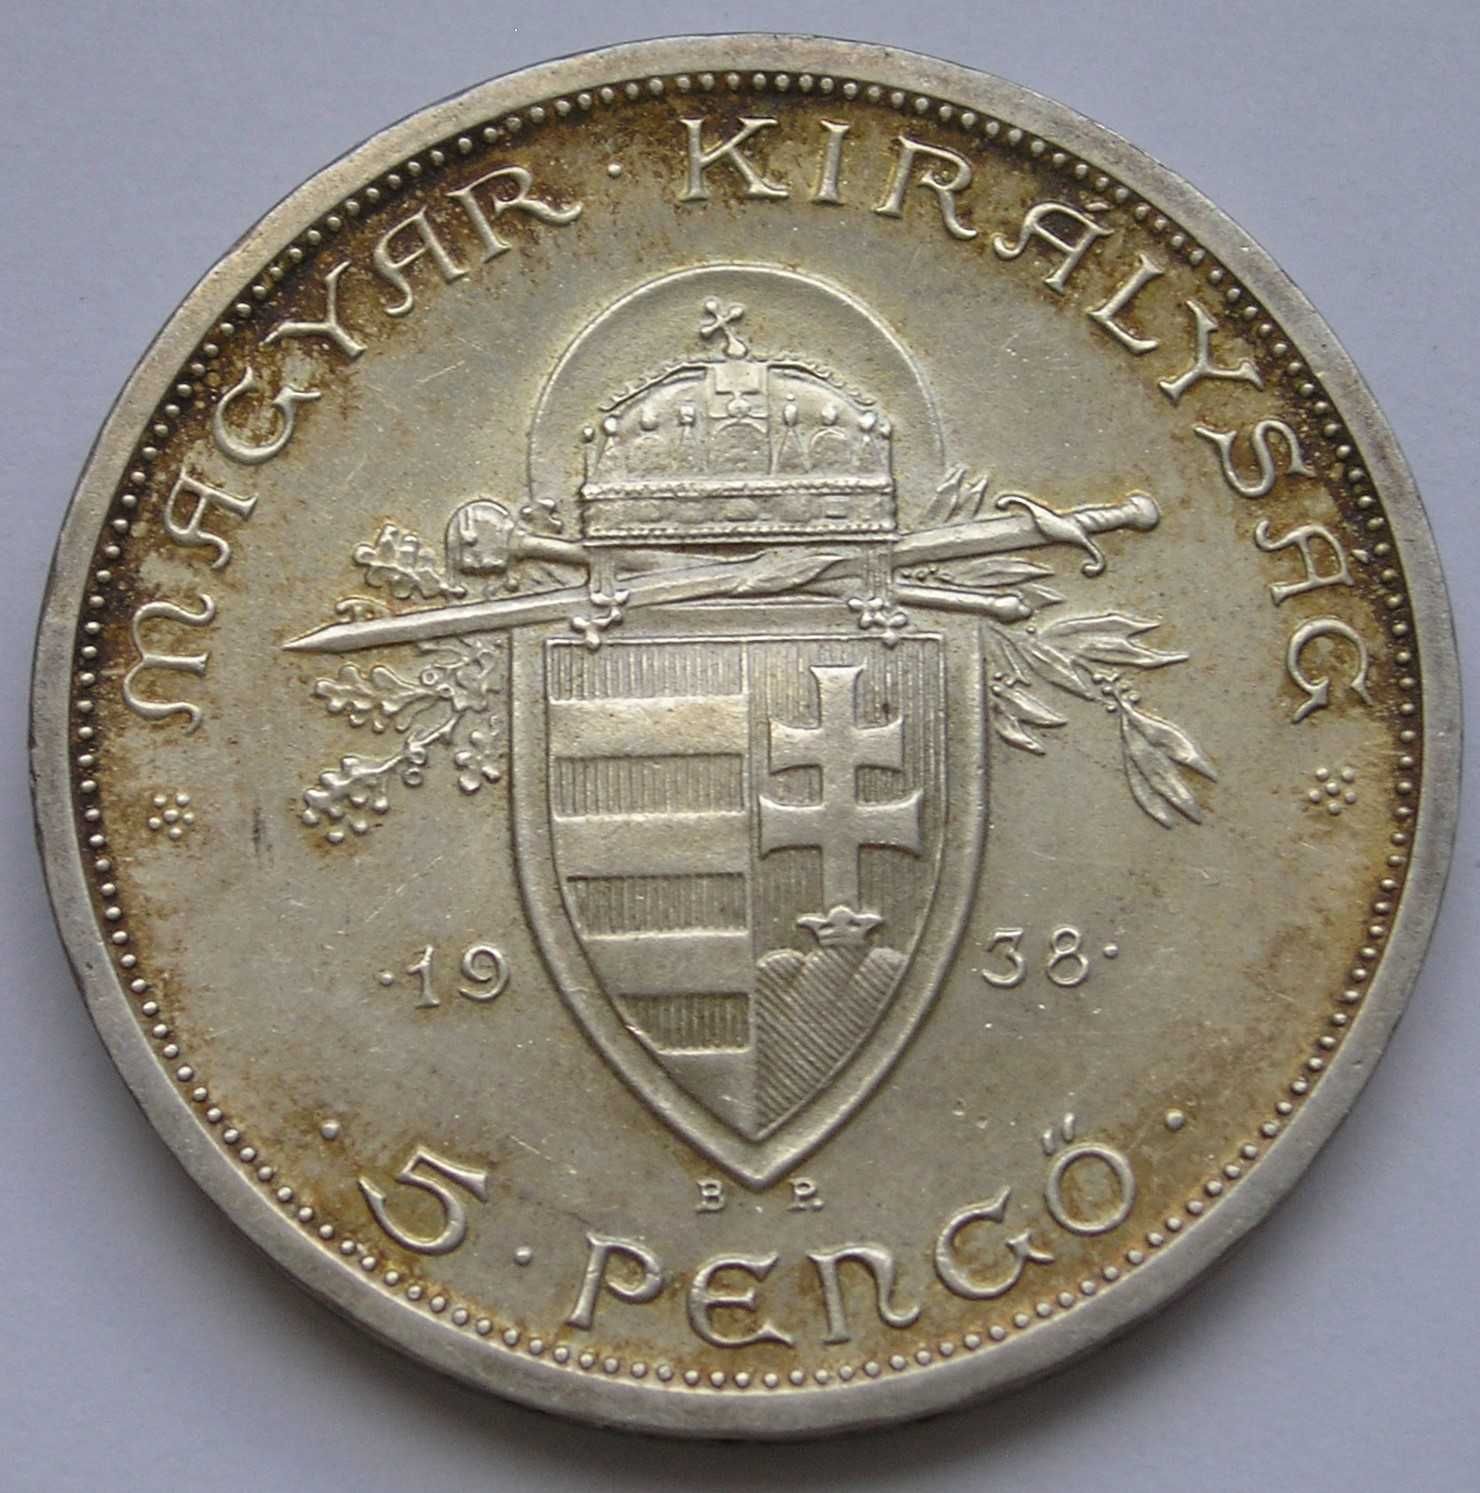 Węgry 5 pengo 1938 - Święty Stefan - srebro